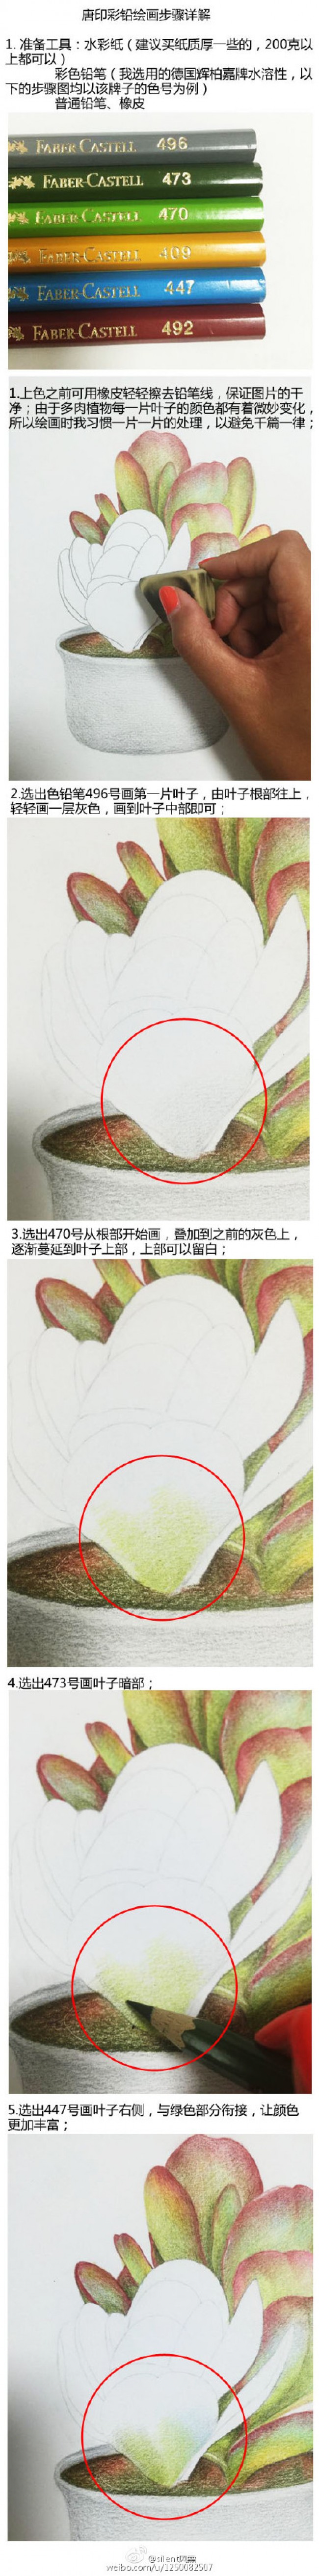 多肉植物彩铅画教程图片细节讲解上色细节和彩铅笔色号分享 图片 6p 才艺君